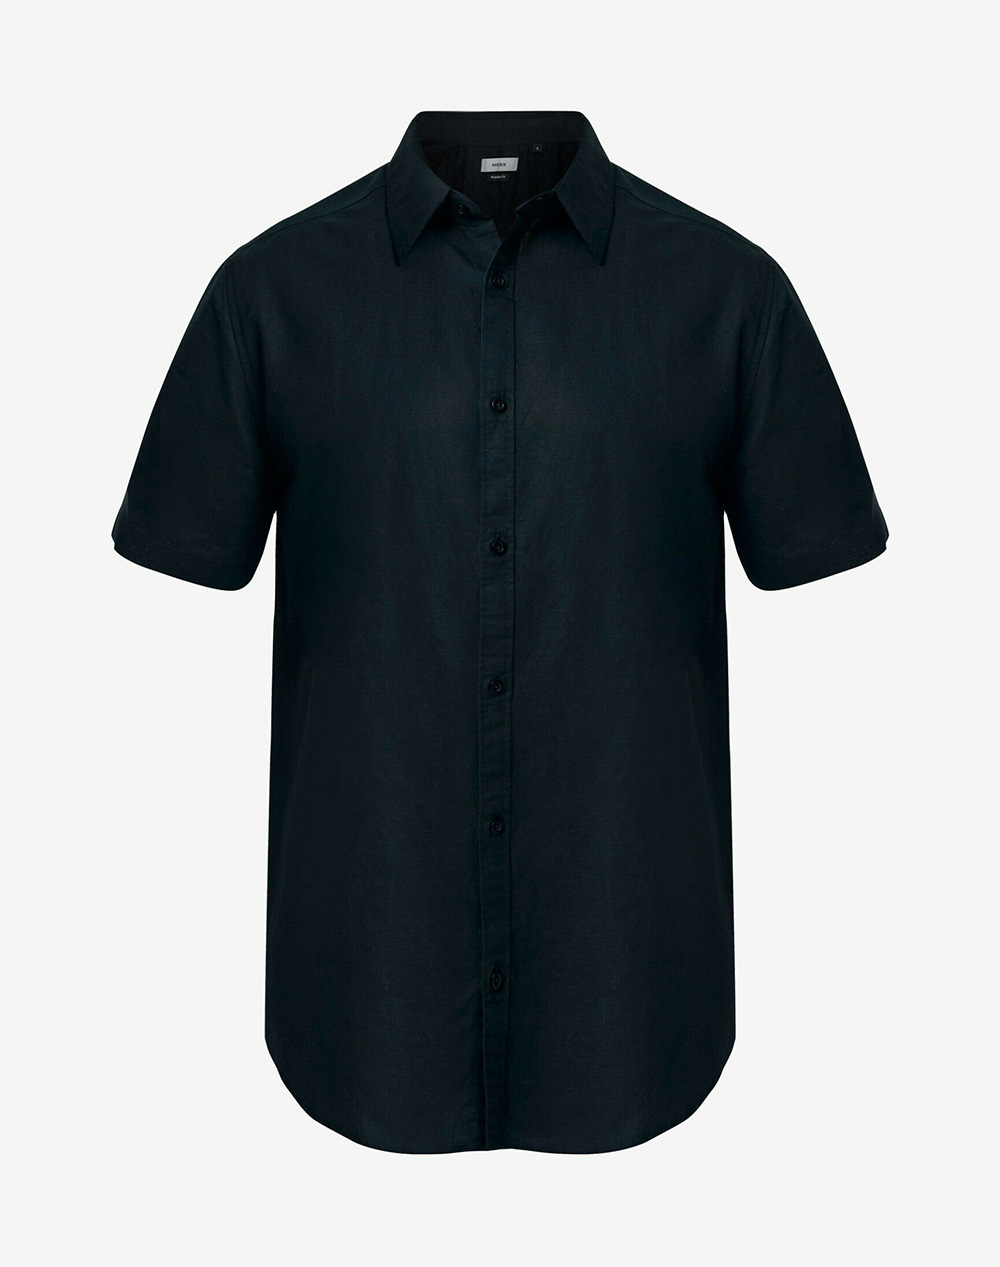 MEXX BRANDON Basic linen short sleeve shirt